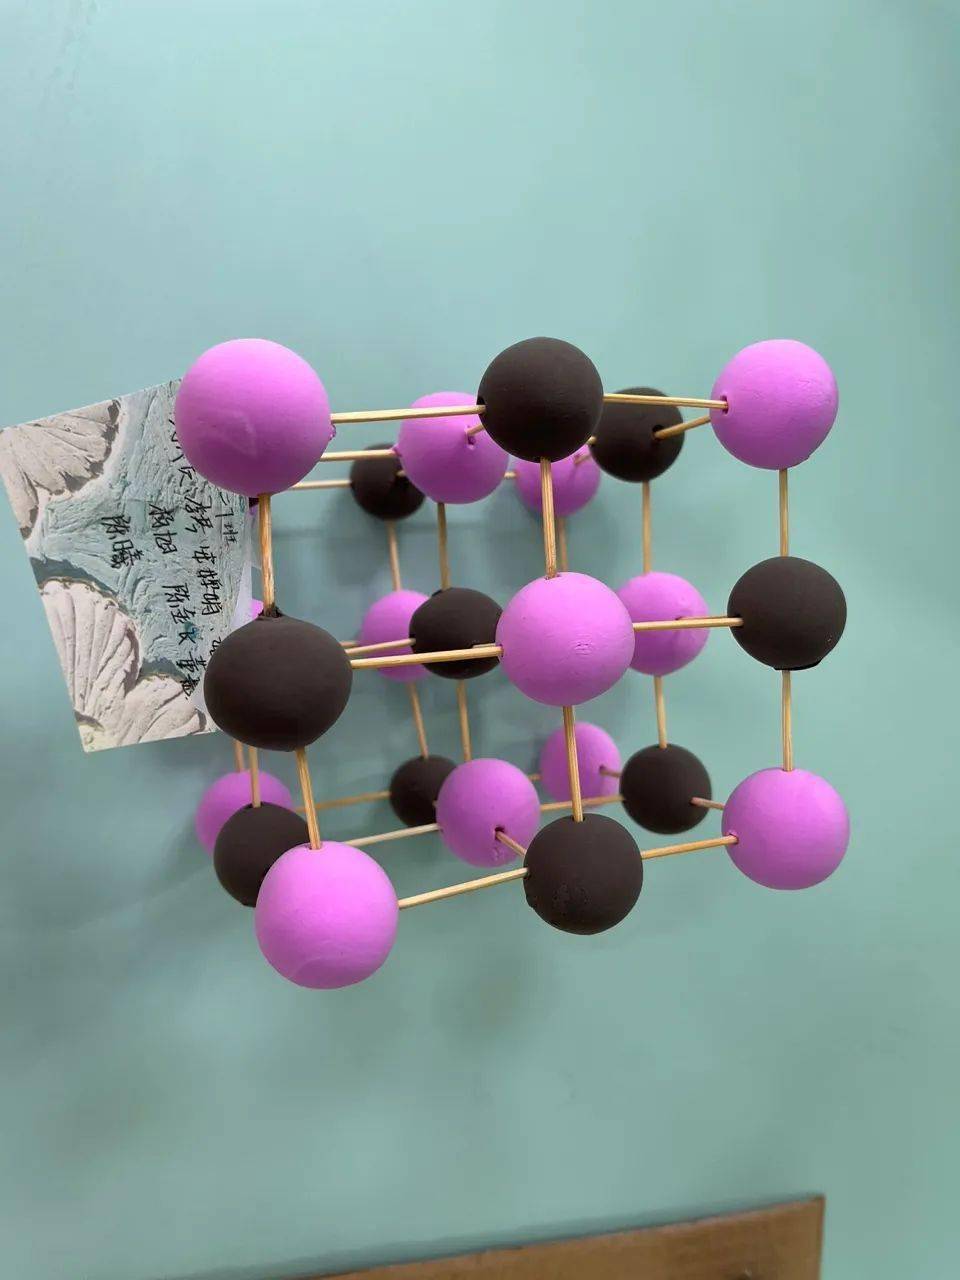 橡皮泥水分子模型图片图片